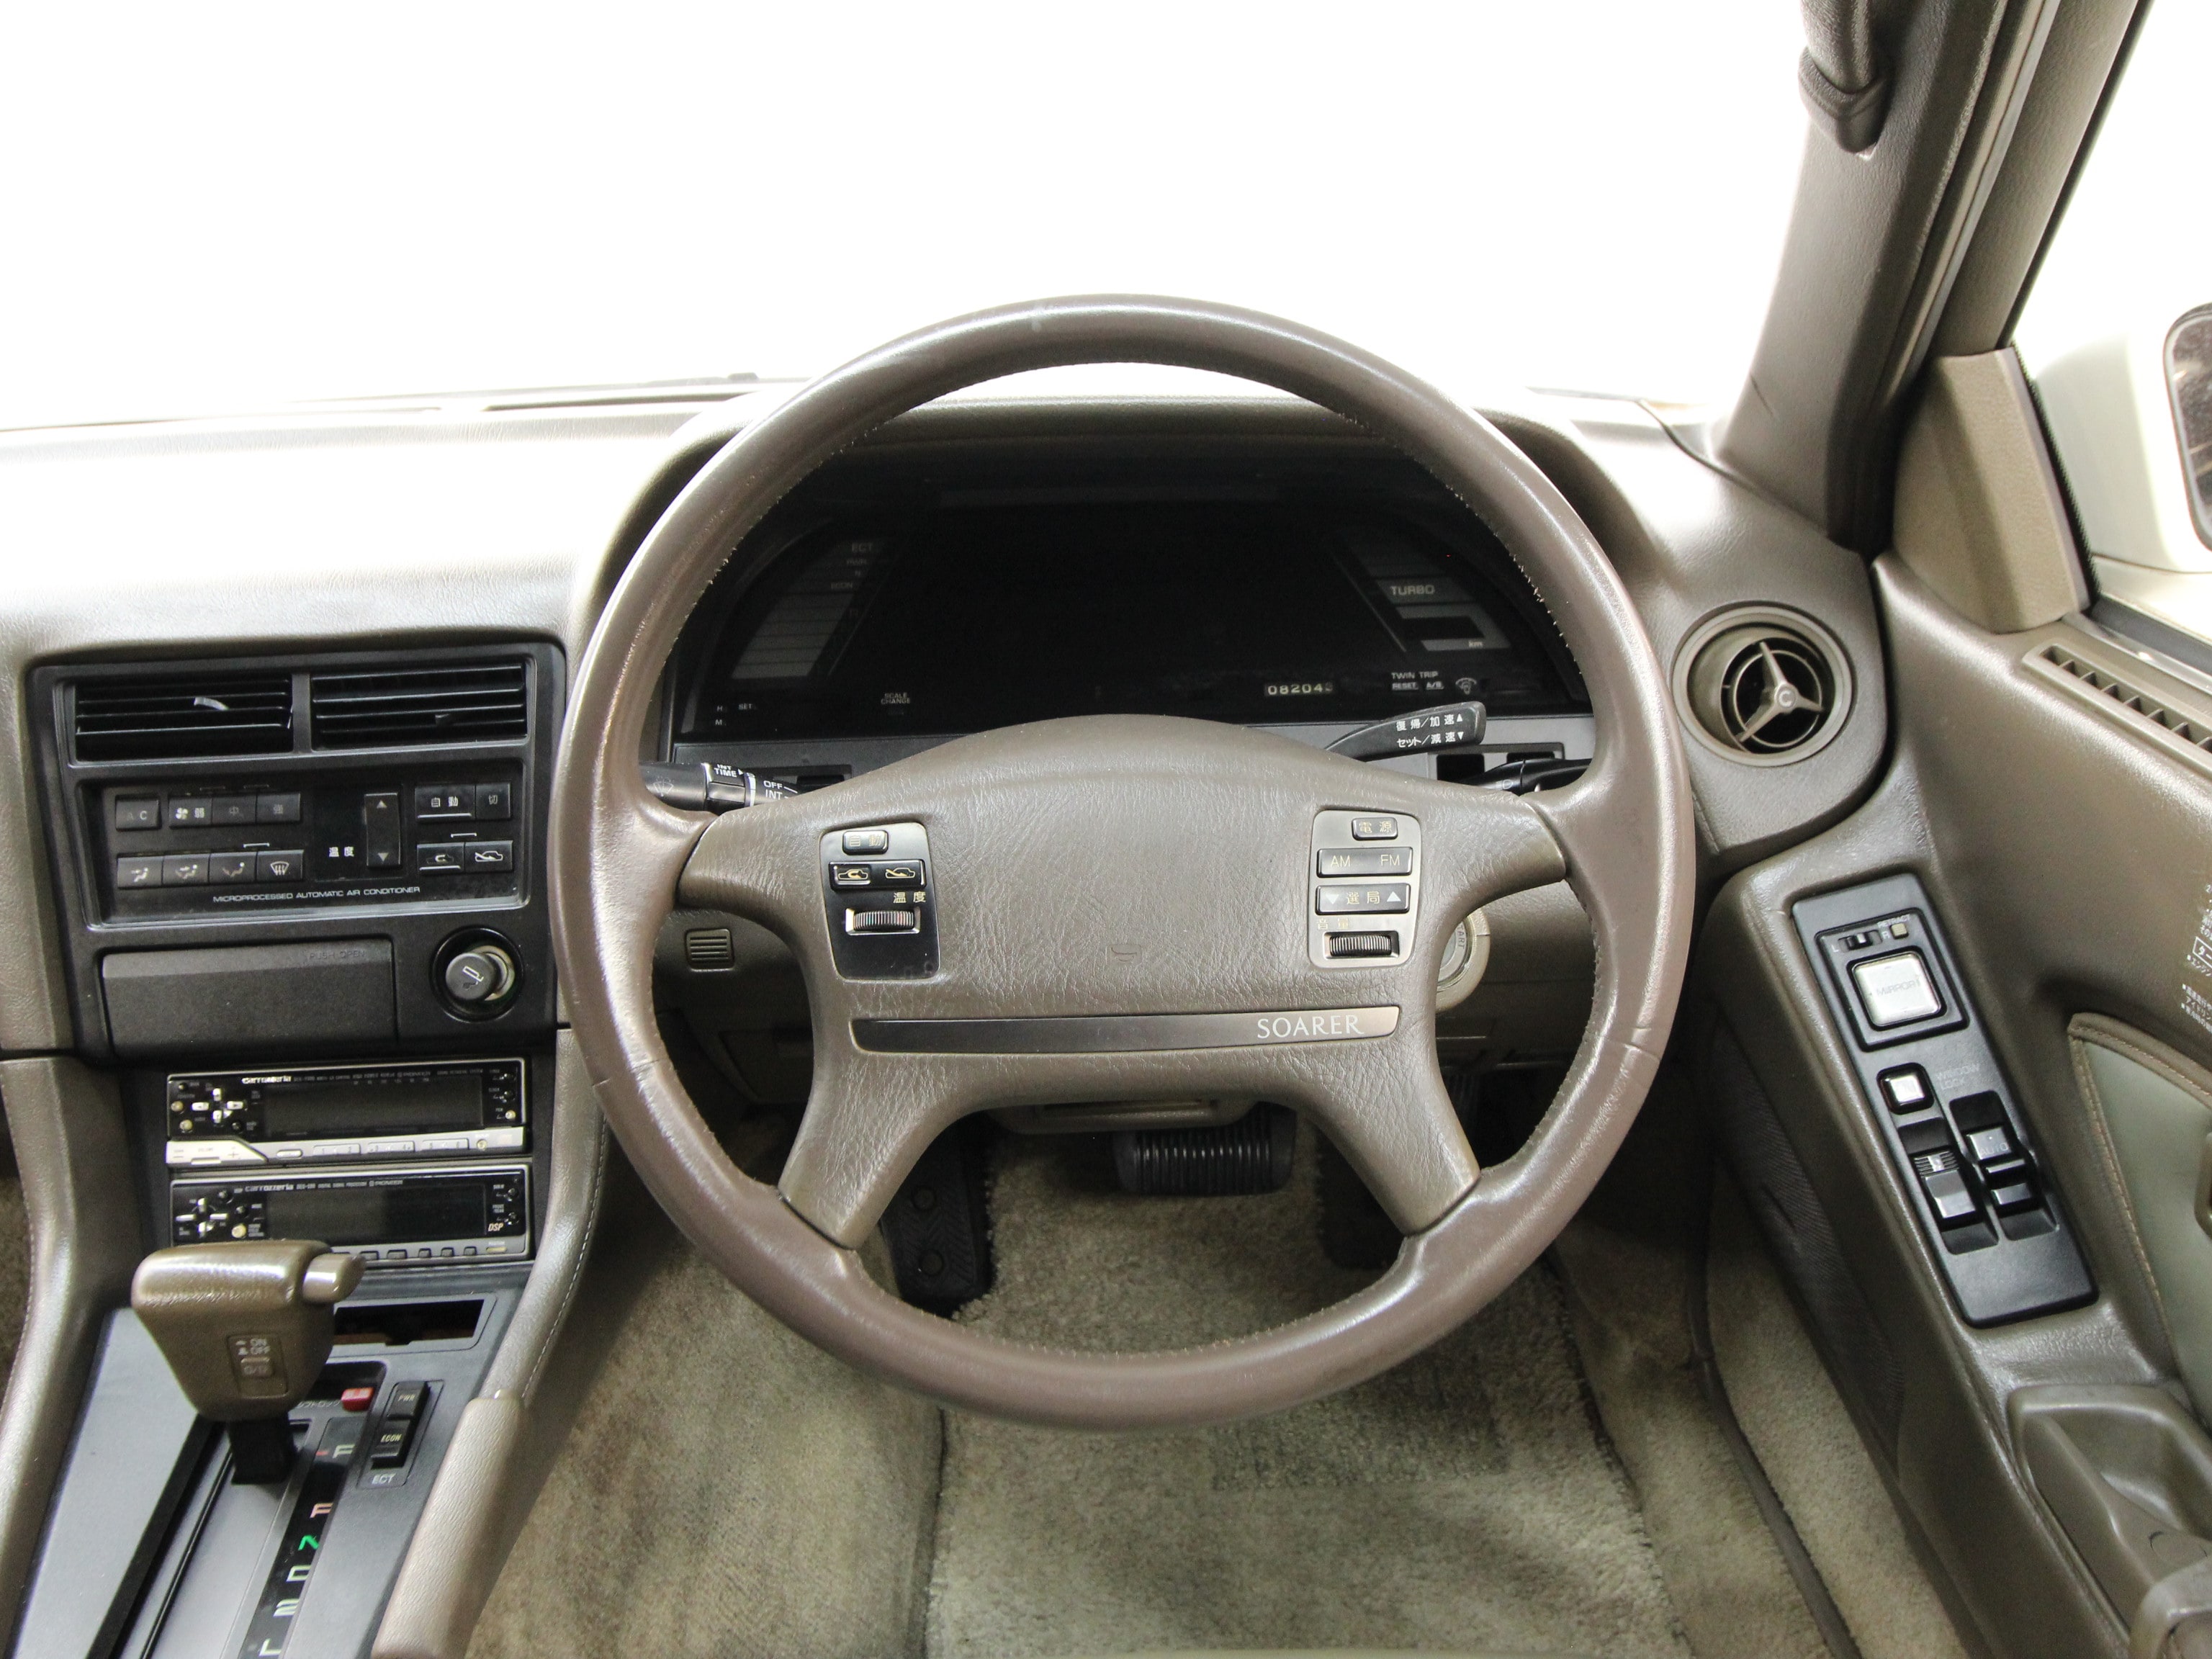 1989 Toyota Soarer 10